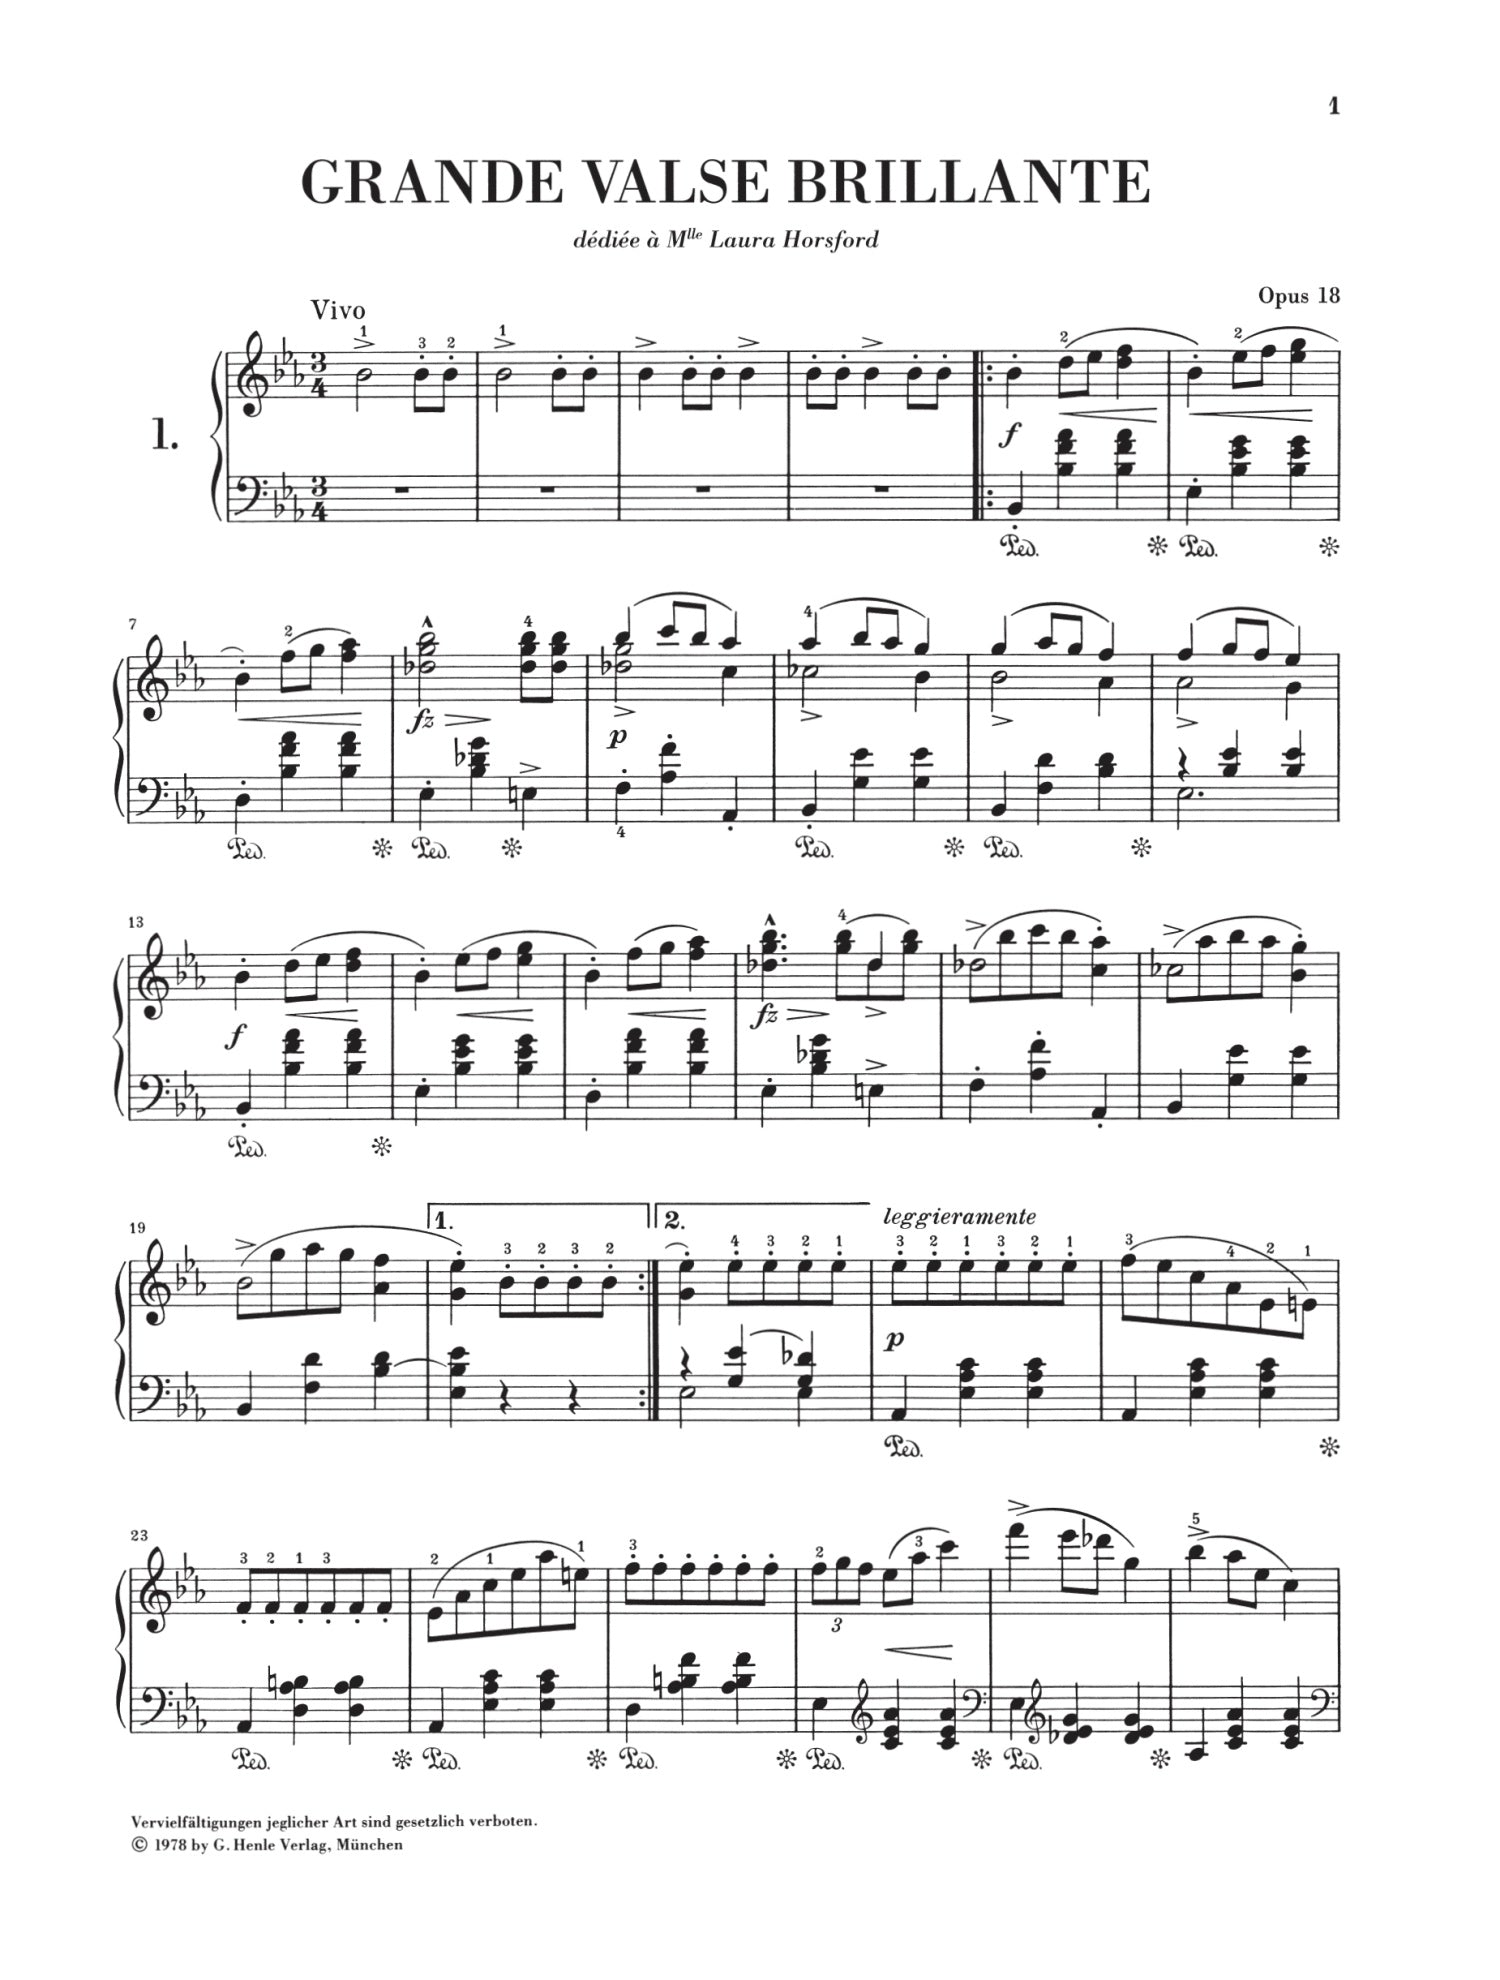 Chopin: Waltzes Bound Edition